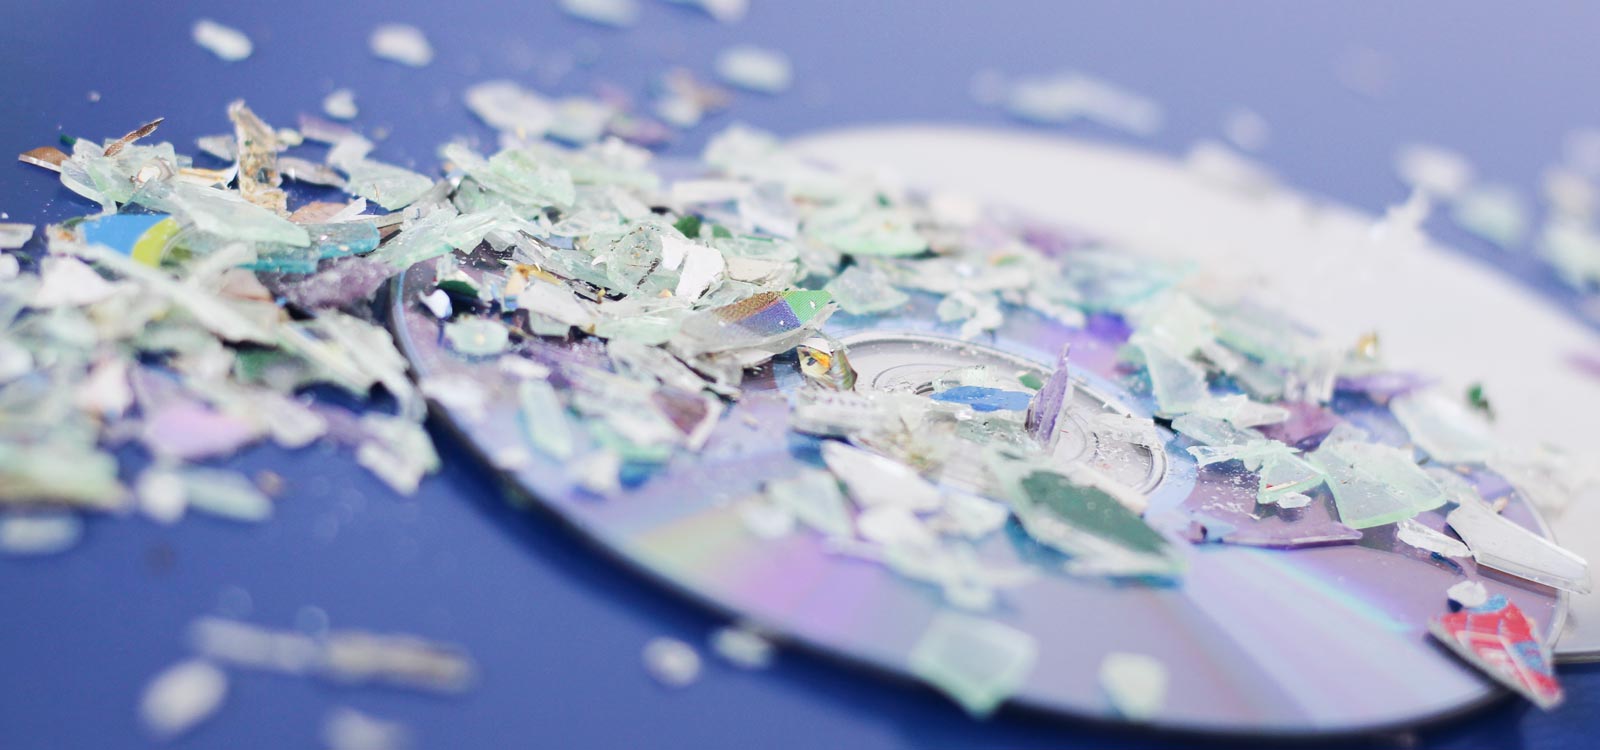 cd-versnipperaar-kopen-om-cd’s-te-vernietigen-papiervernietiger